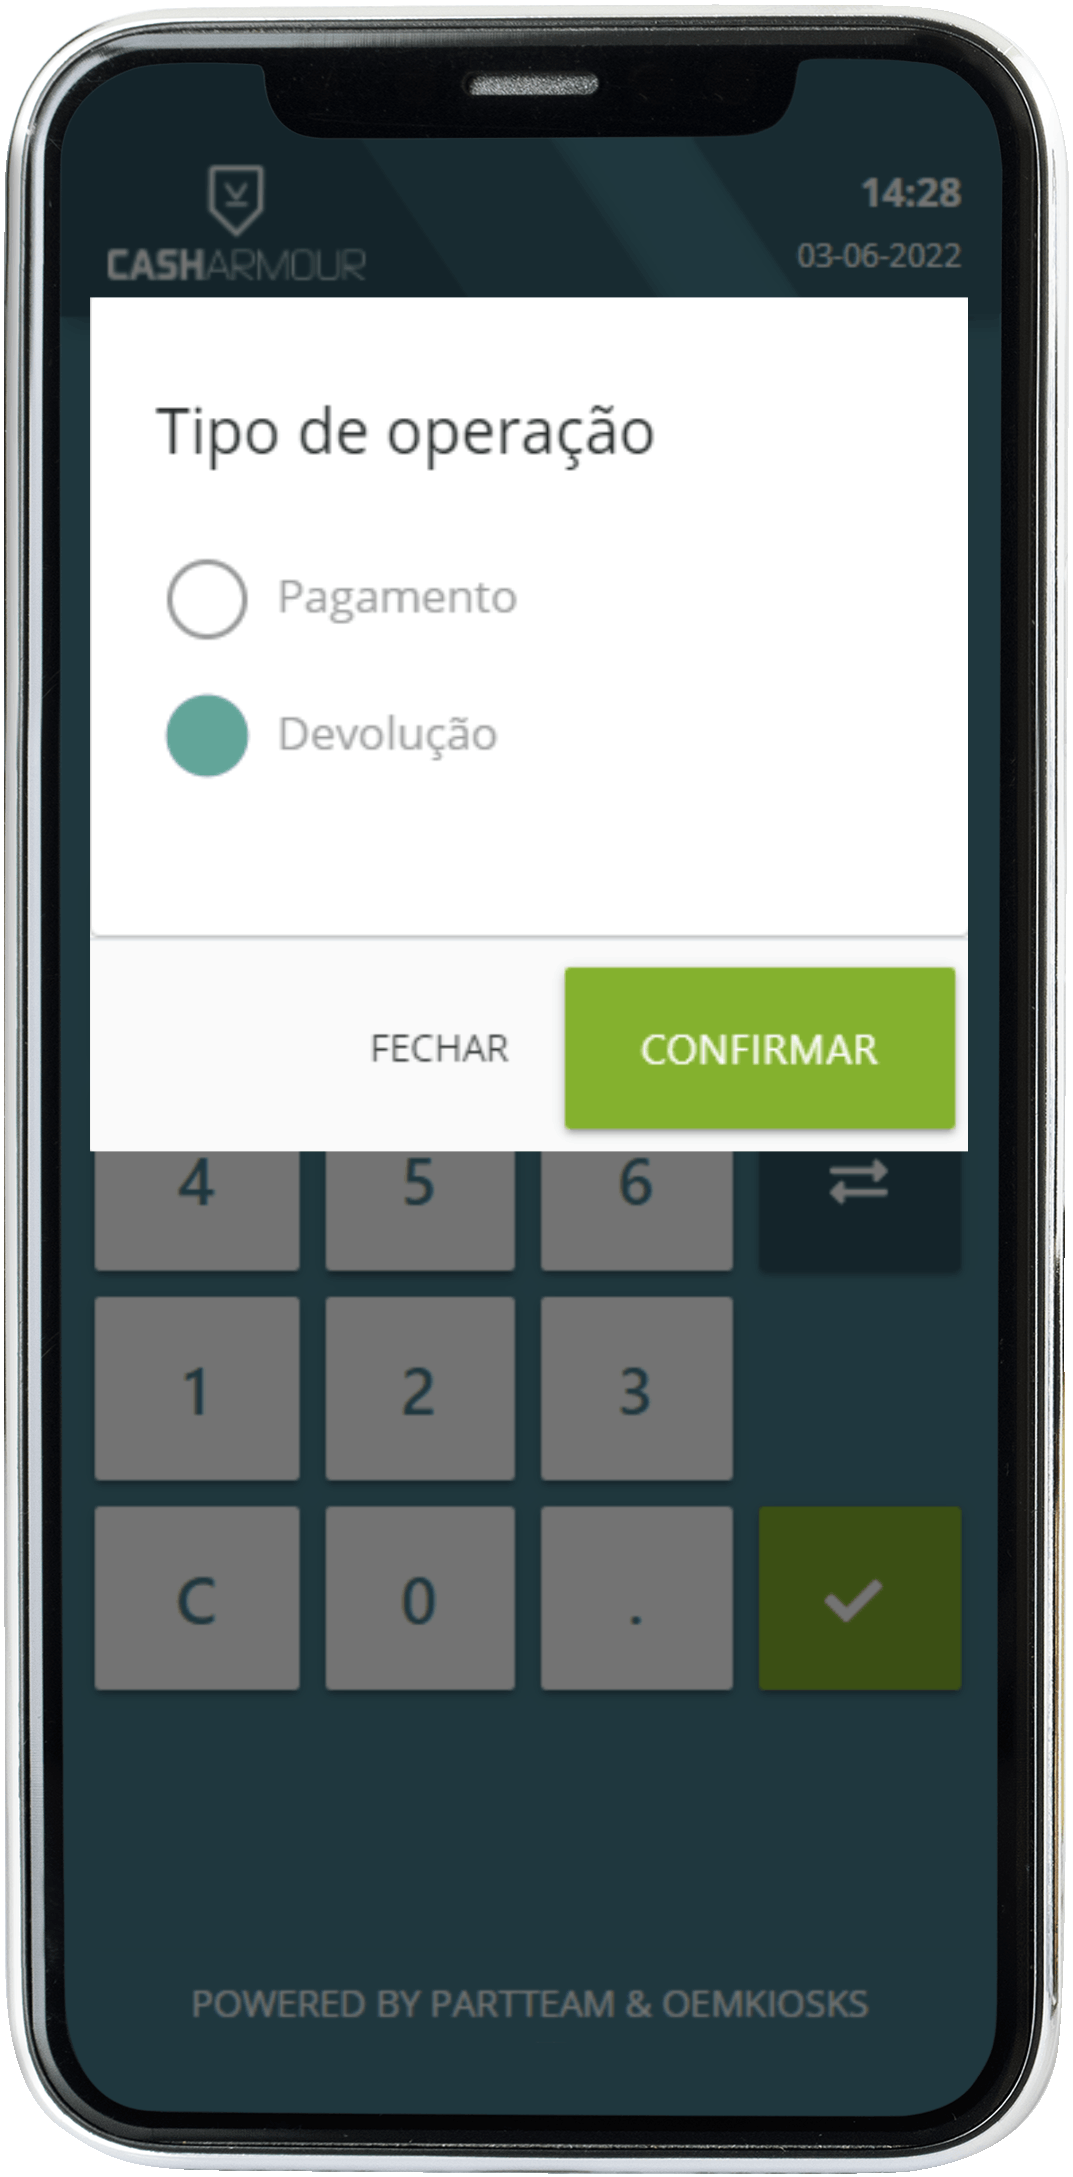 Casharmour - App Operador